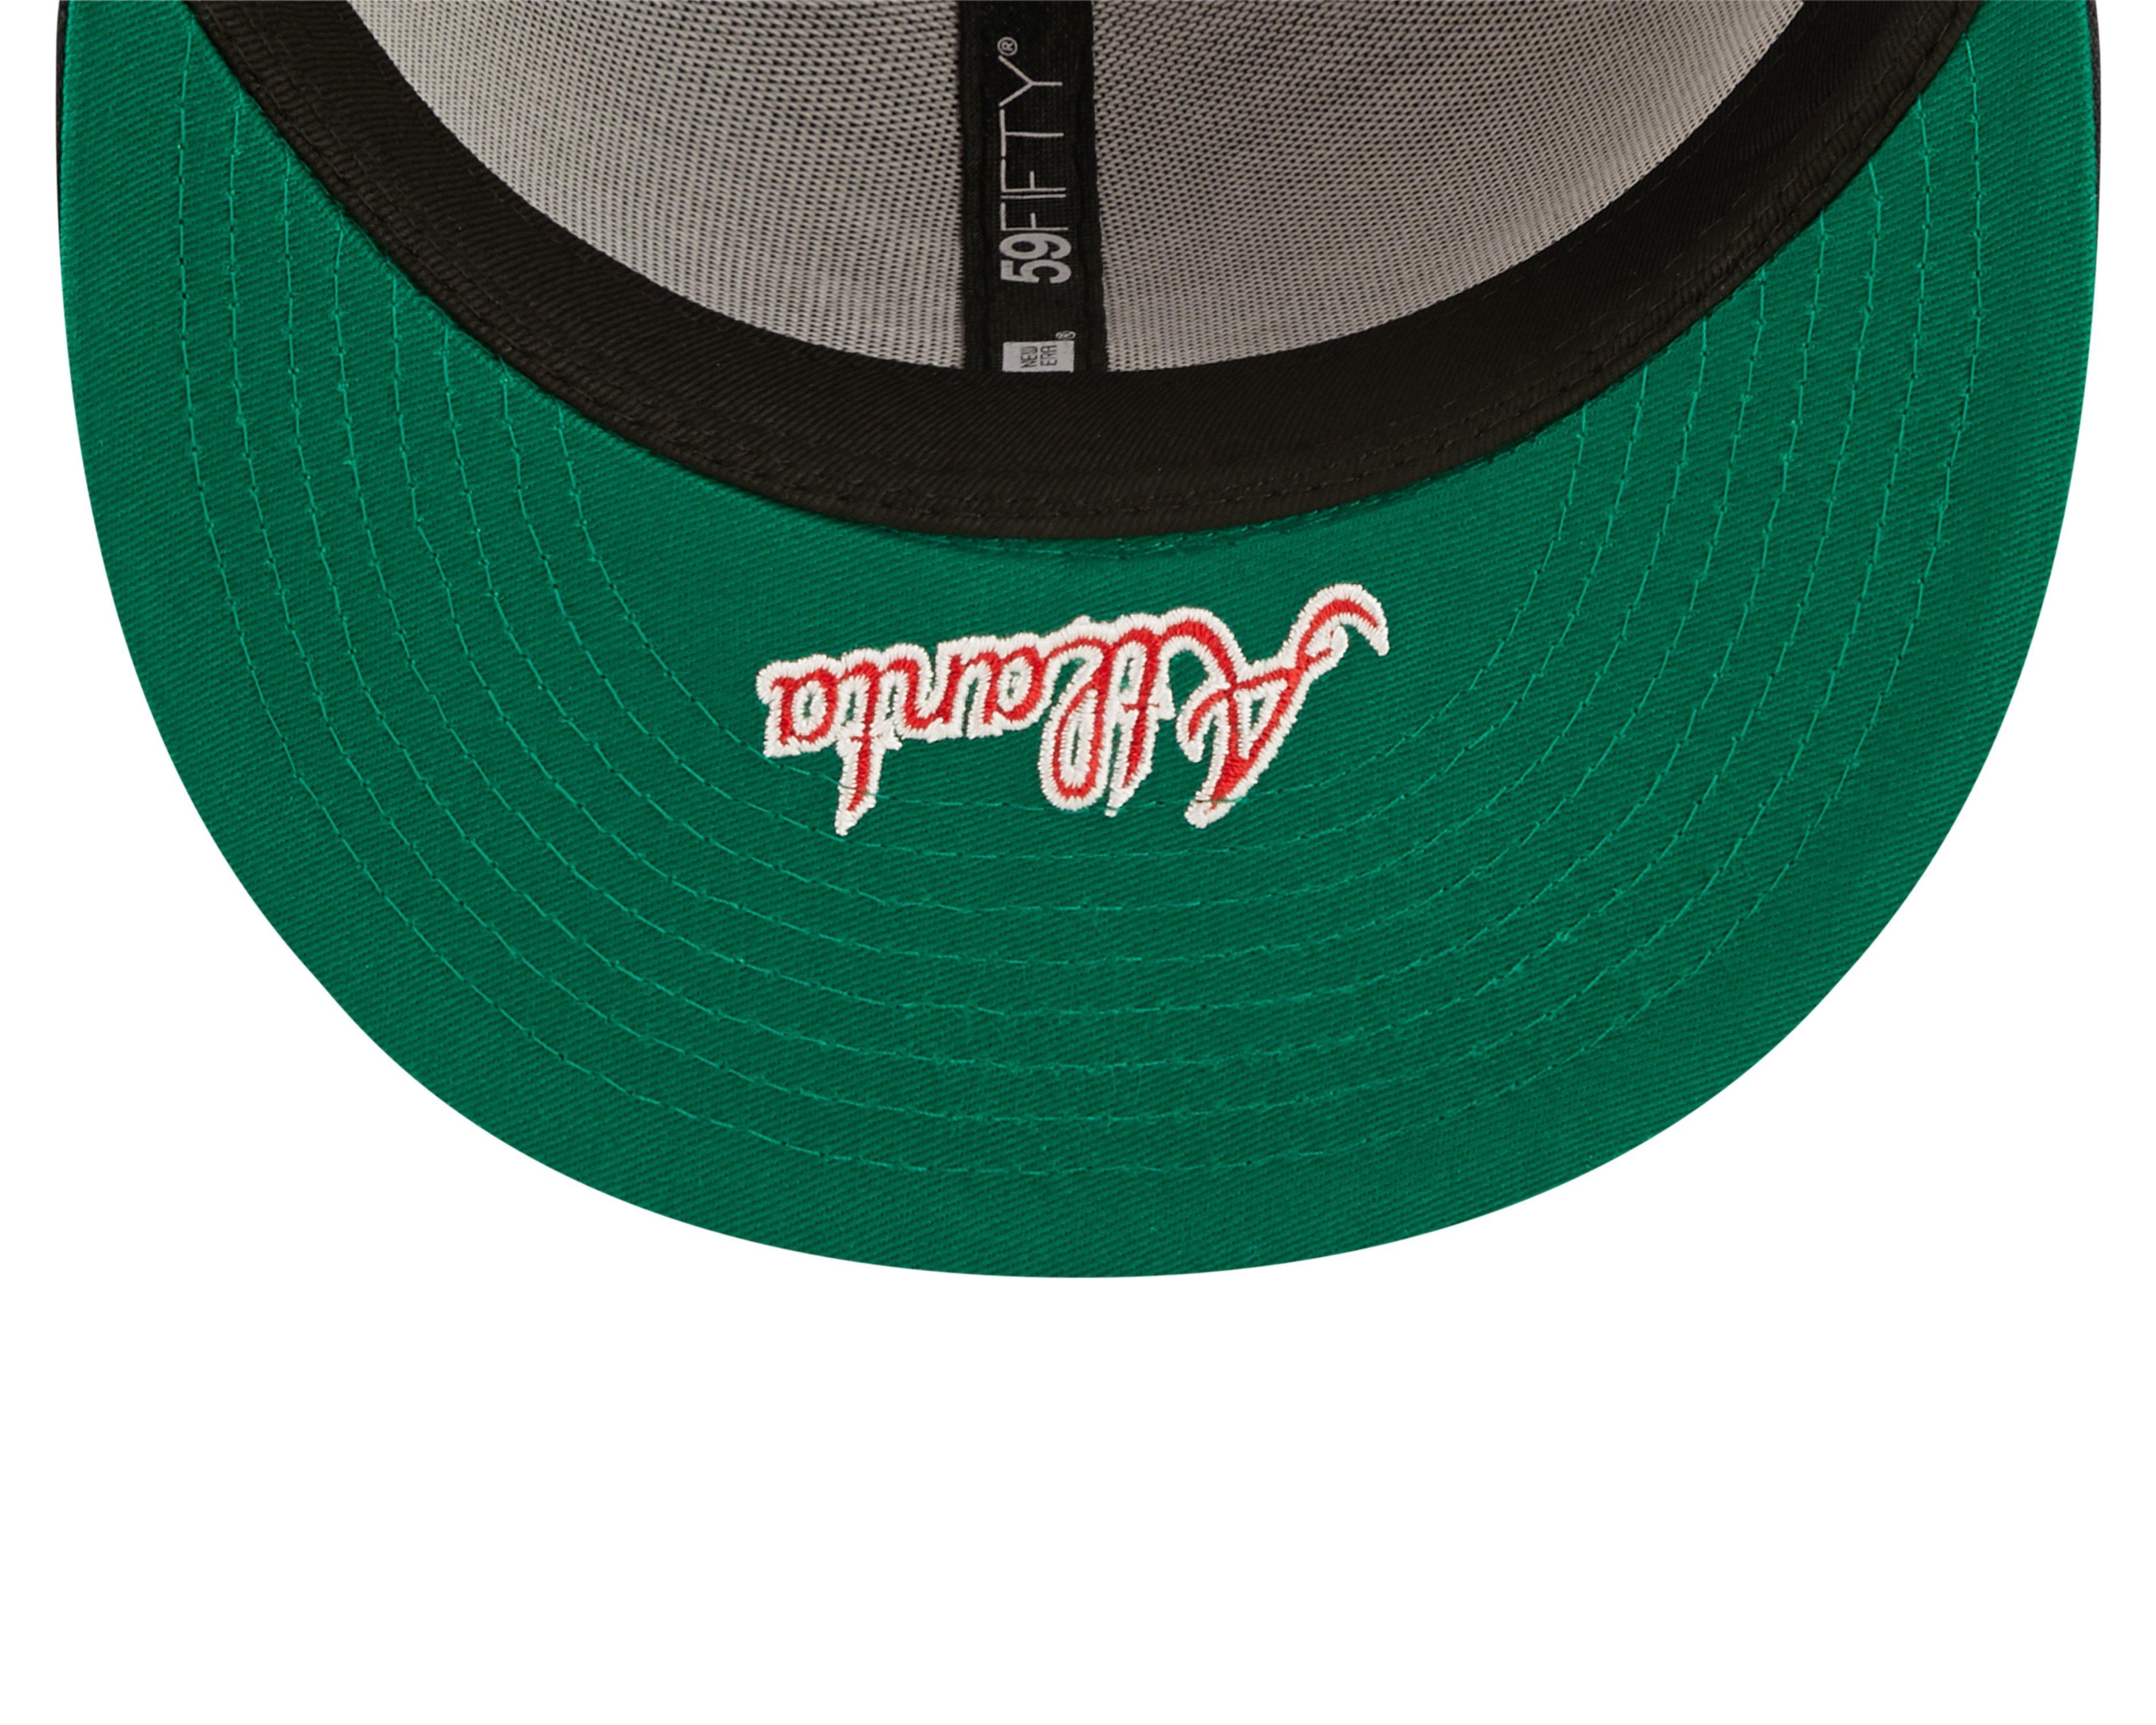 New Era Atlanta Braves 59FIFTY Basic Black Fitted Hat - Hibbett